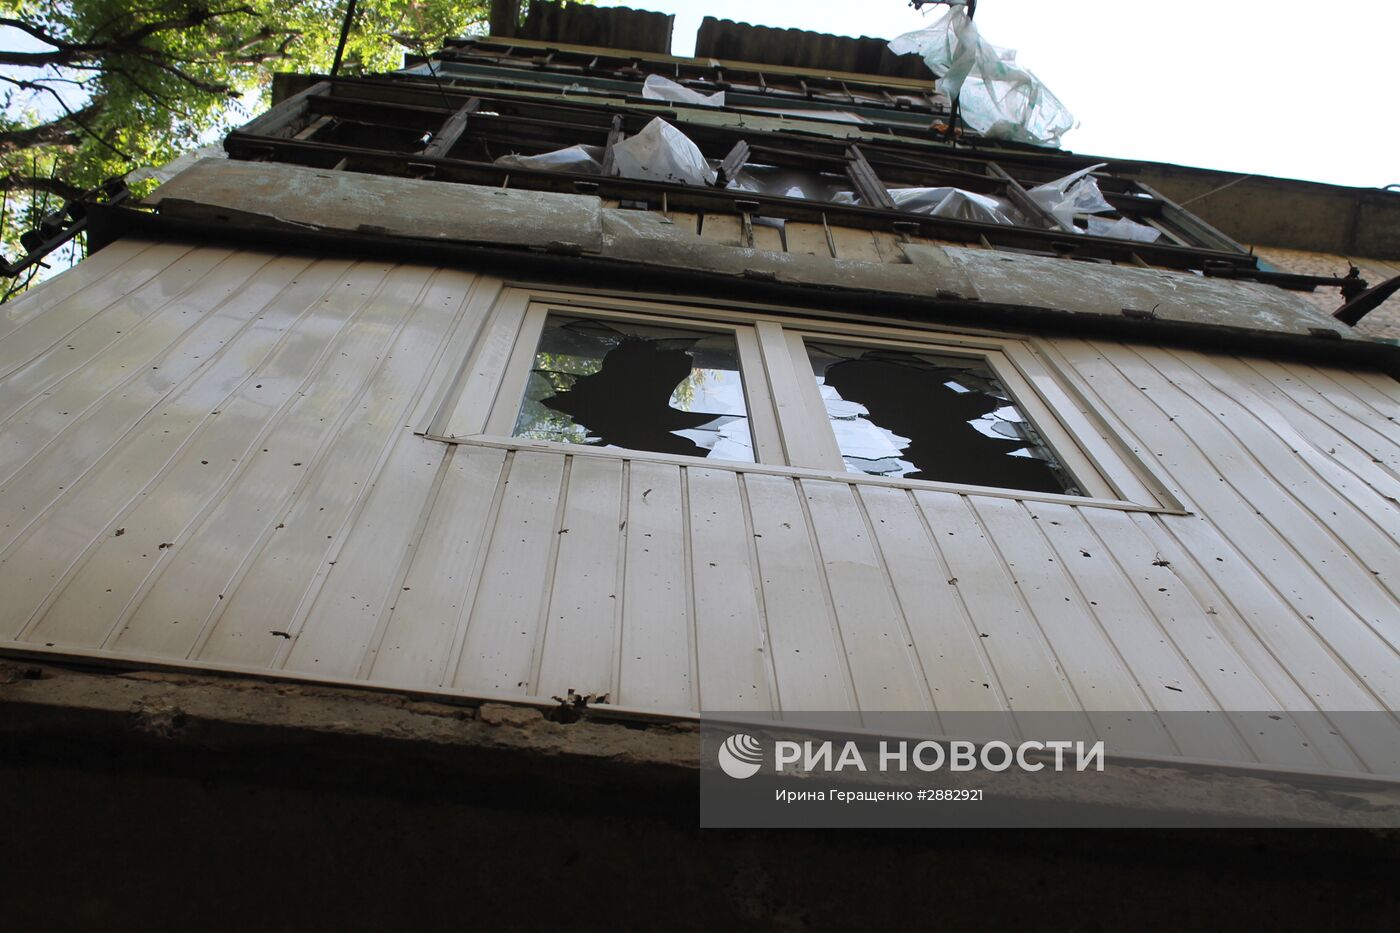 Последствия обстрелов Донецка украинскими силовиками